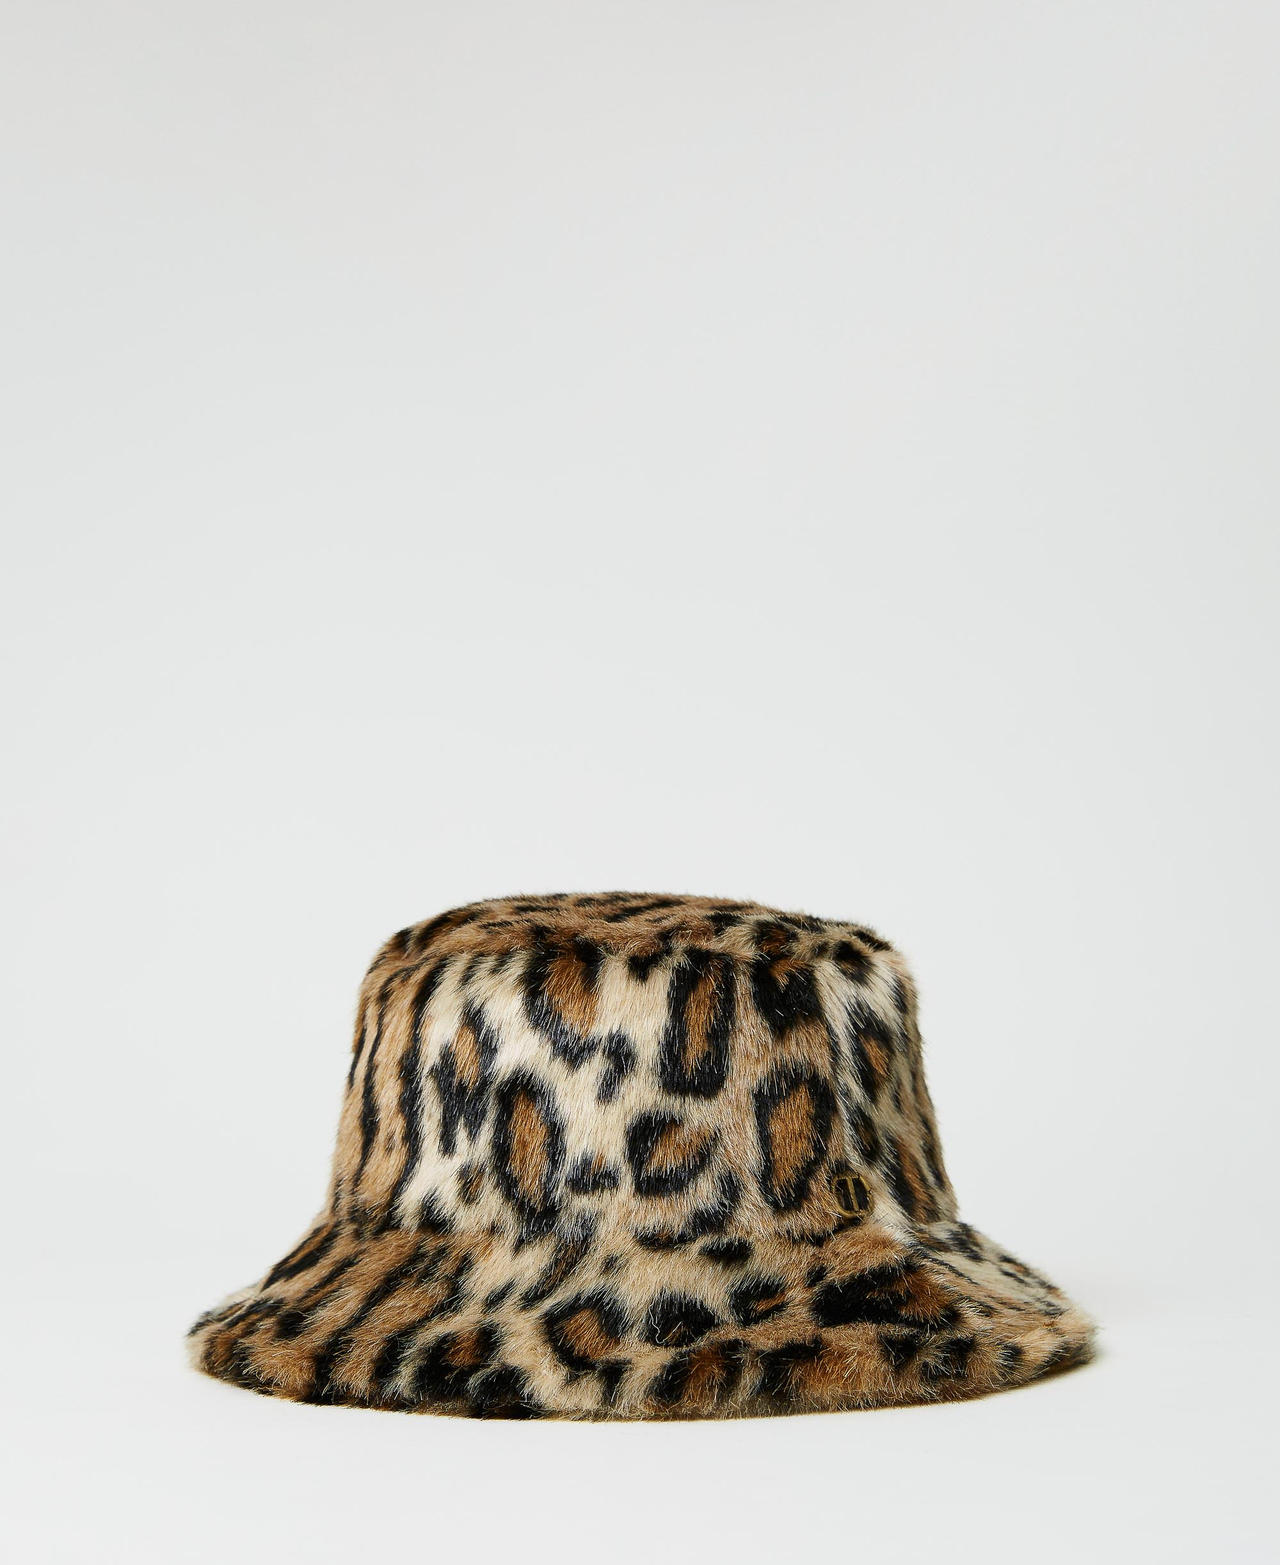 twinset accessori - cappello fisher in faux fur, stampa animalier nero / marrone iced coffee, pelliccia sintetica, taglia unica donna